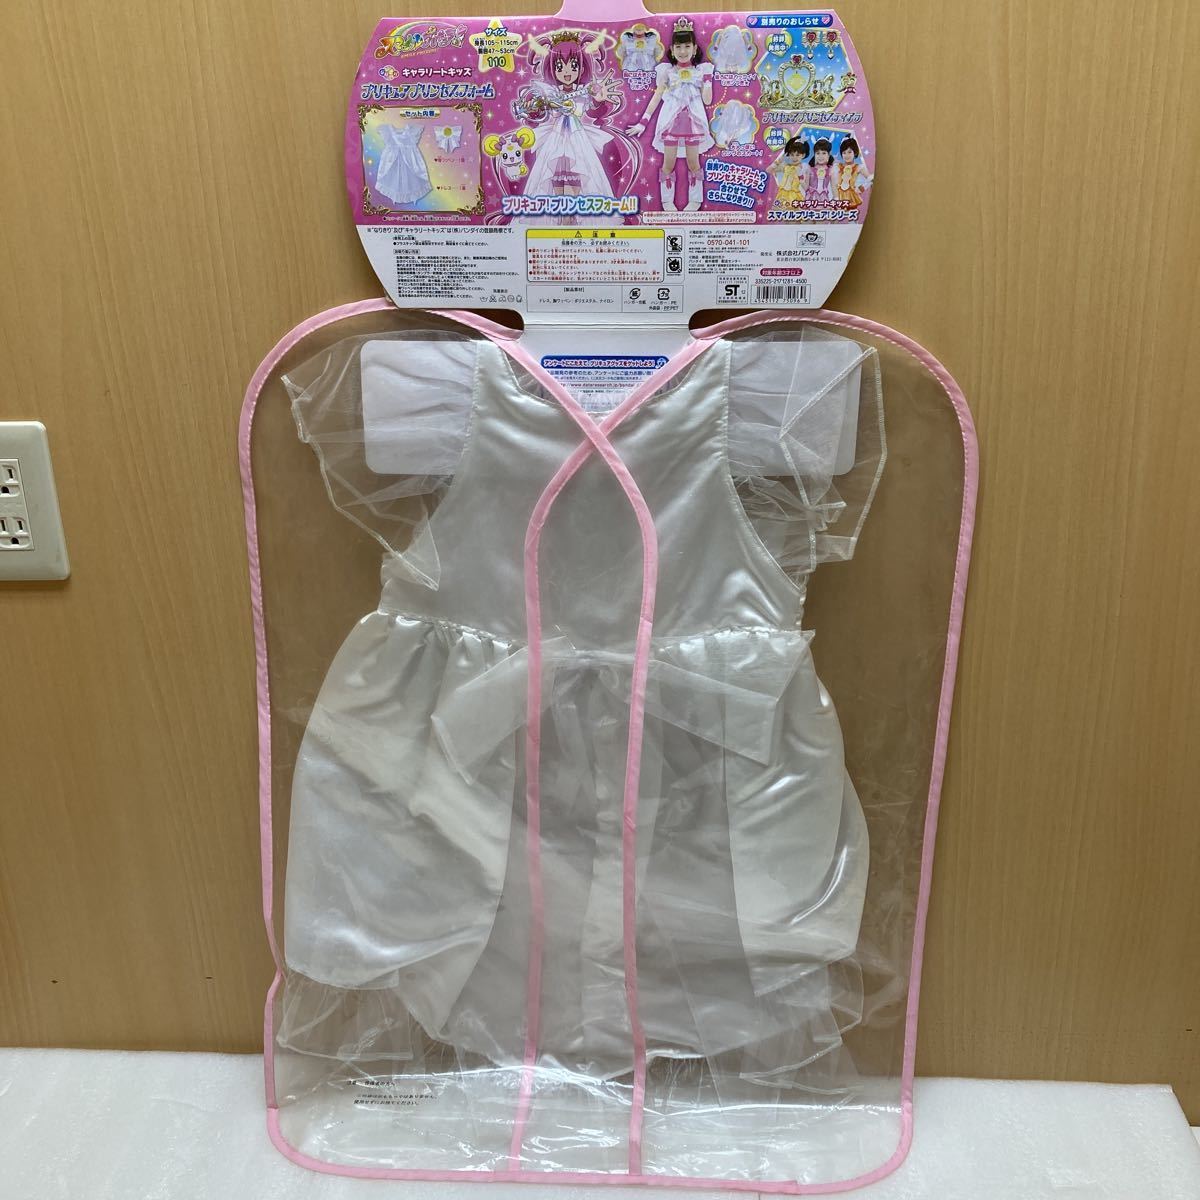 GXL8501 Smile Precure becomes .. Cara Lee to Kids Precure Princess foam / metamorphosis p lithium unused storage goods 105-115cm